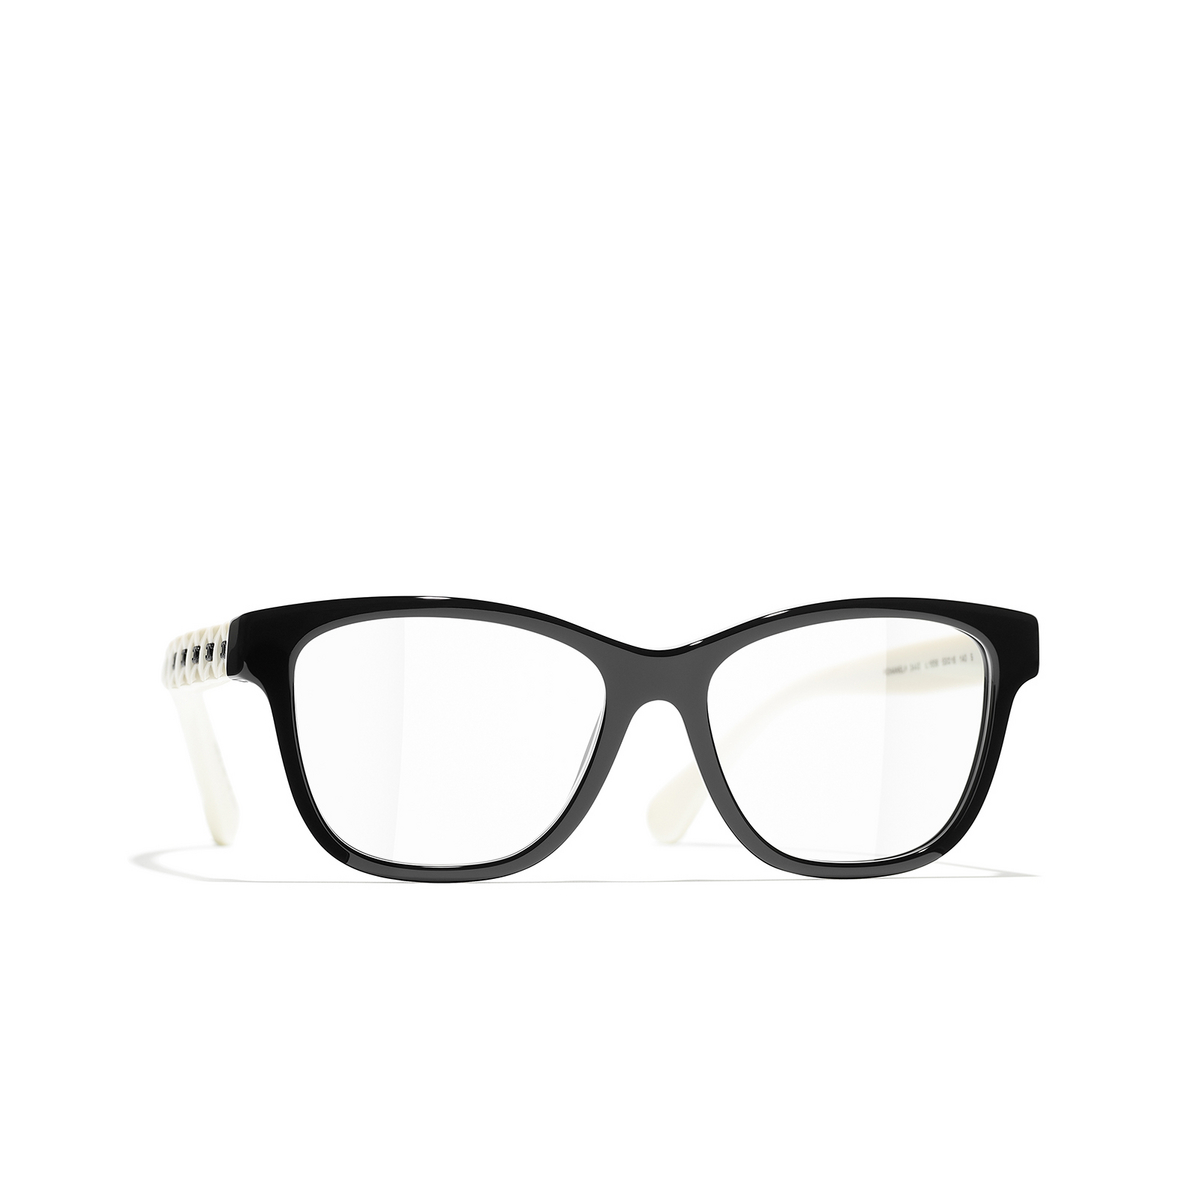 CHANEL square Eyeglasses 1656 Black & White - three-quarters view